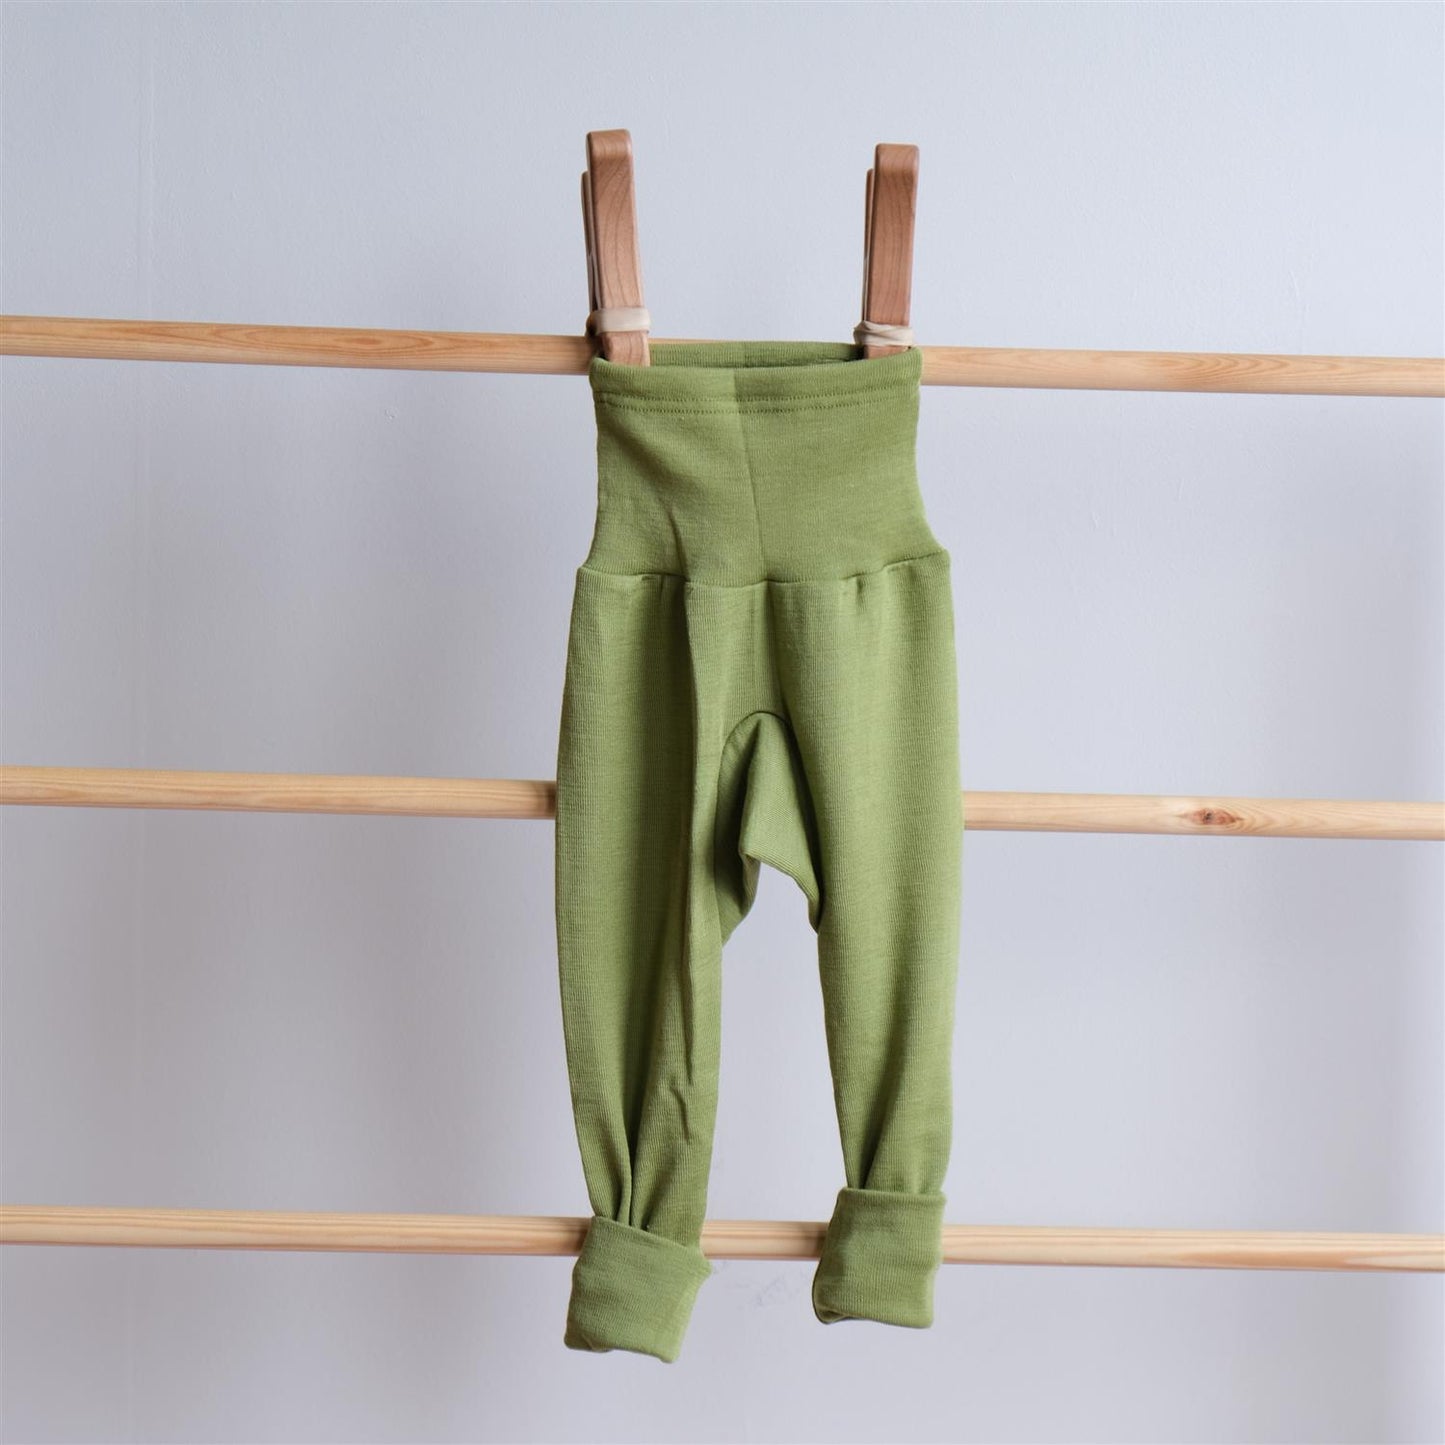 Bukse - grønn - høyt liv - ull/silke